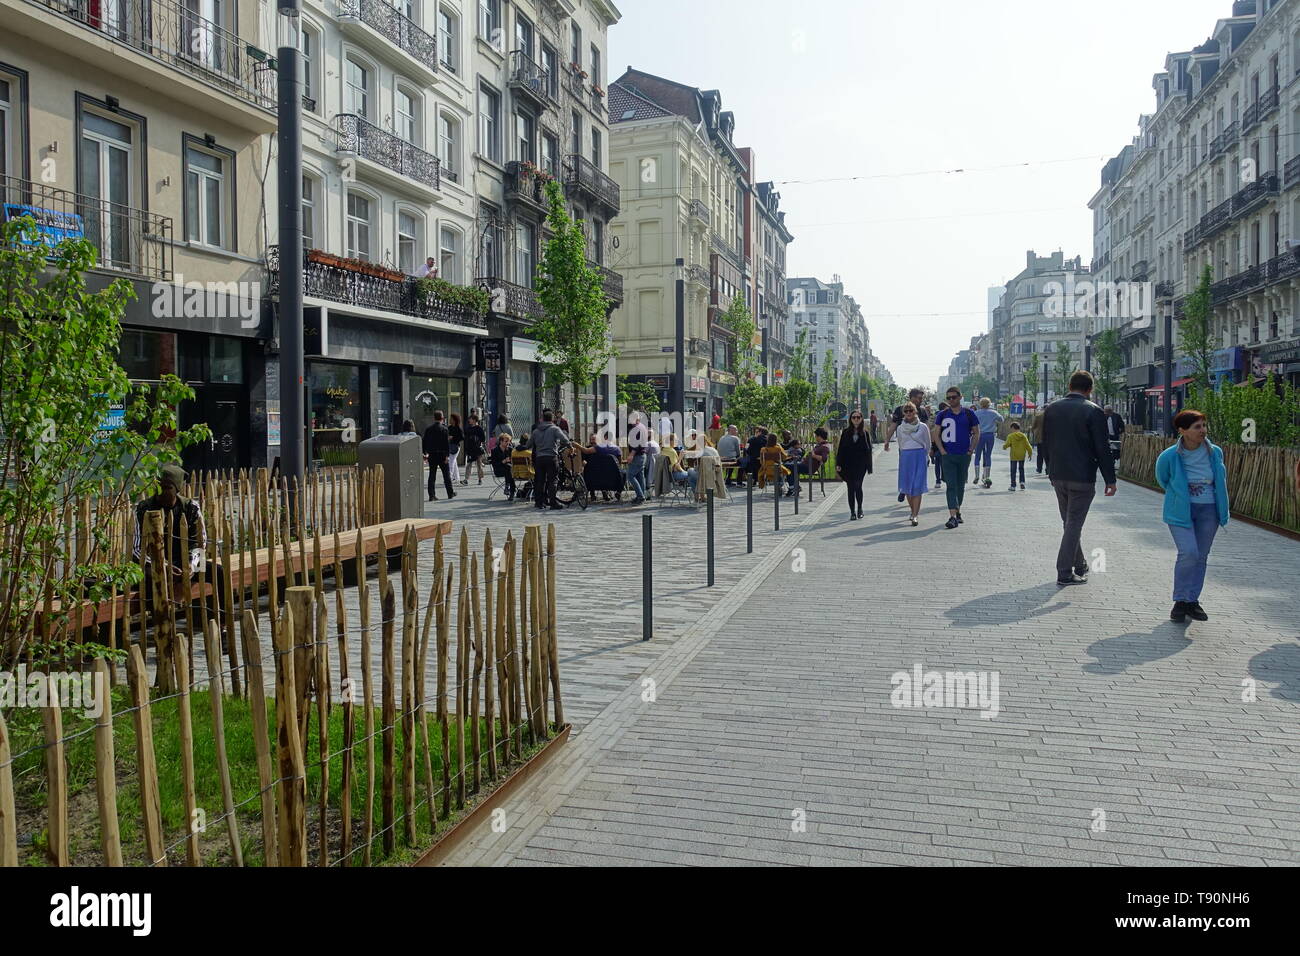 Brüssel, Boulevard Anspach, Umbau zur fußgeherzone - Brüssel, Boulevard Anspach, die Umwandlung in eine Fußgängerzone Stockfoto